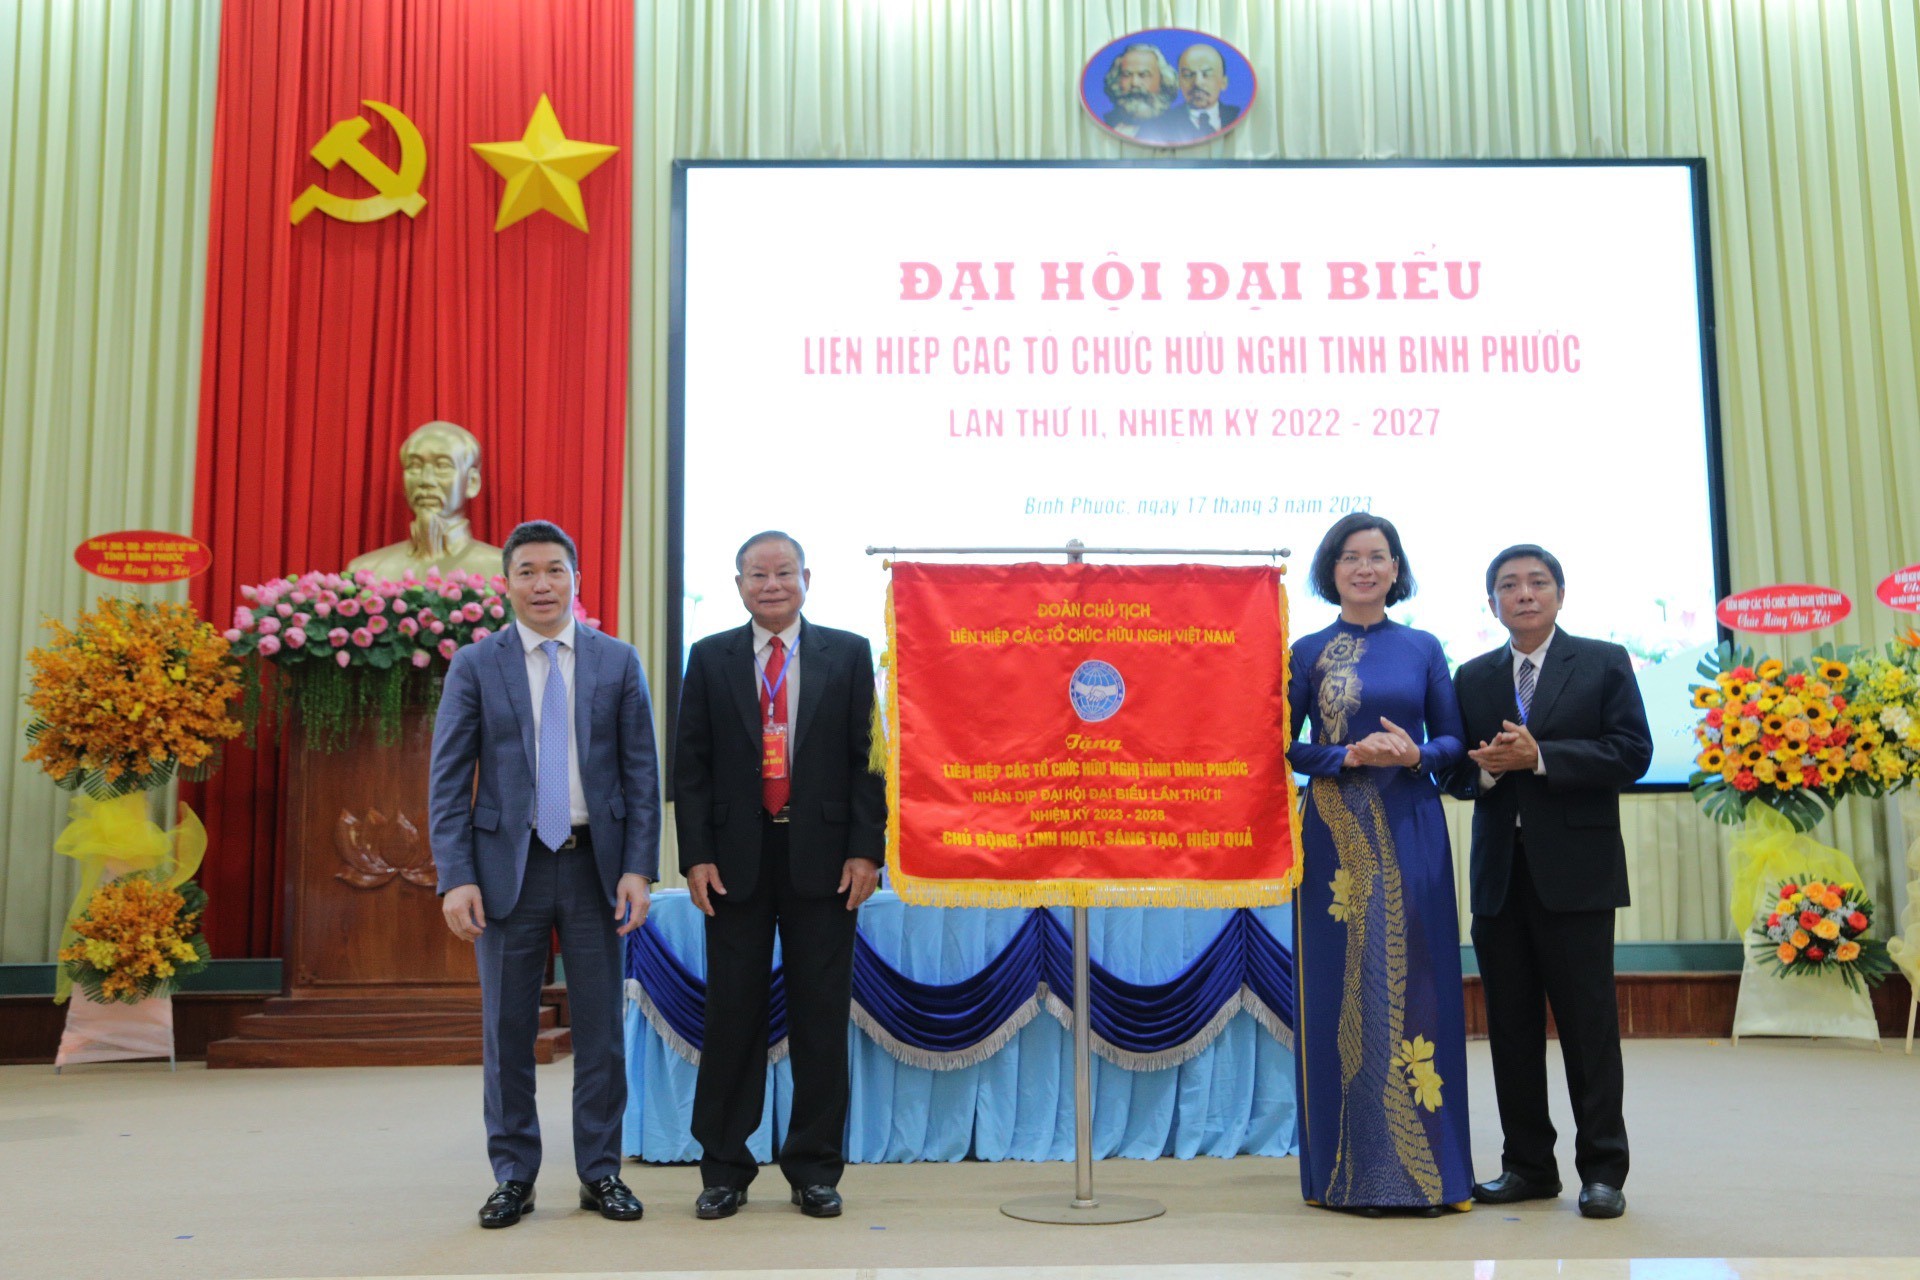 Ông Phan Anh Sơn, Phó Chủ tịch, Tổng Thư ký Liên hiệp các tổ chức hữu nghị Việt Nam (ngoài cùng, bên trái) tặng Cờ lưu niệm cho Liên hiệp các tổ chức hữu nghị tỉnh Bình Phước nhân dịp Đại hội Đại biểu lần thứ II.